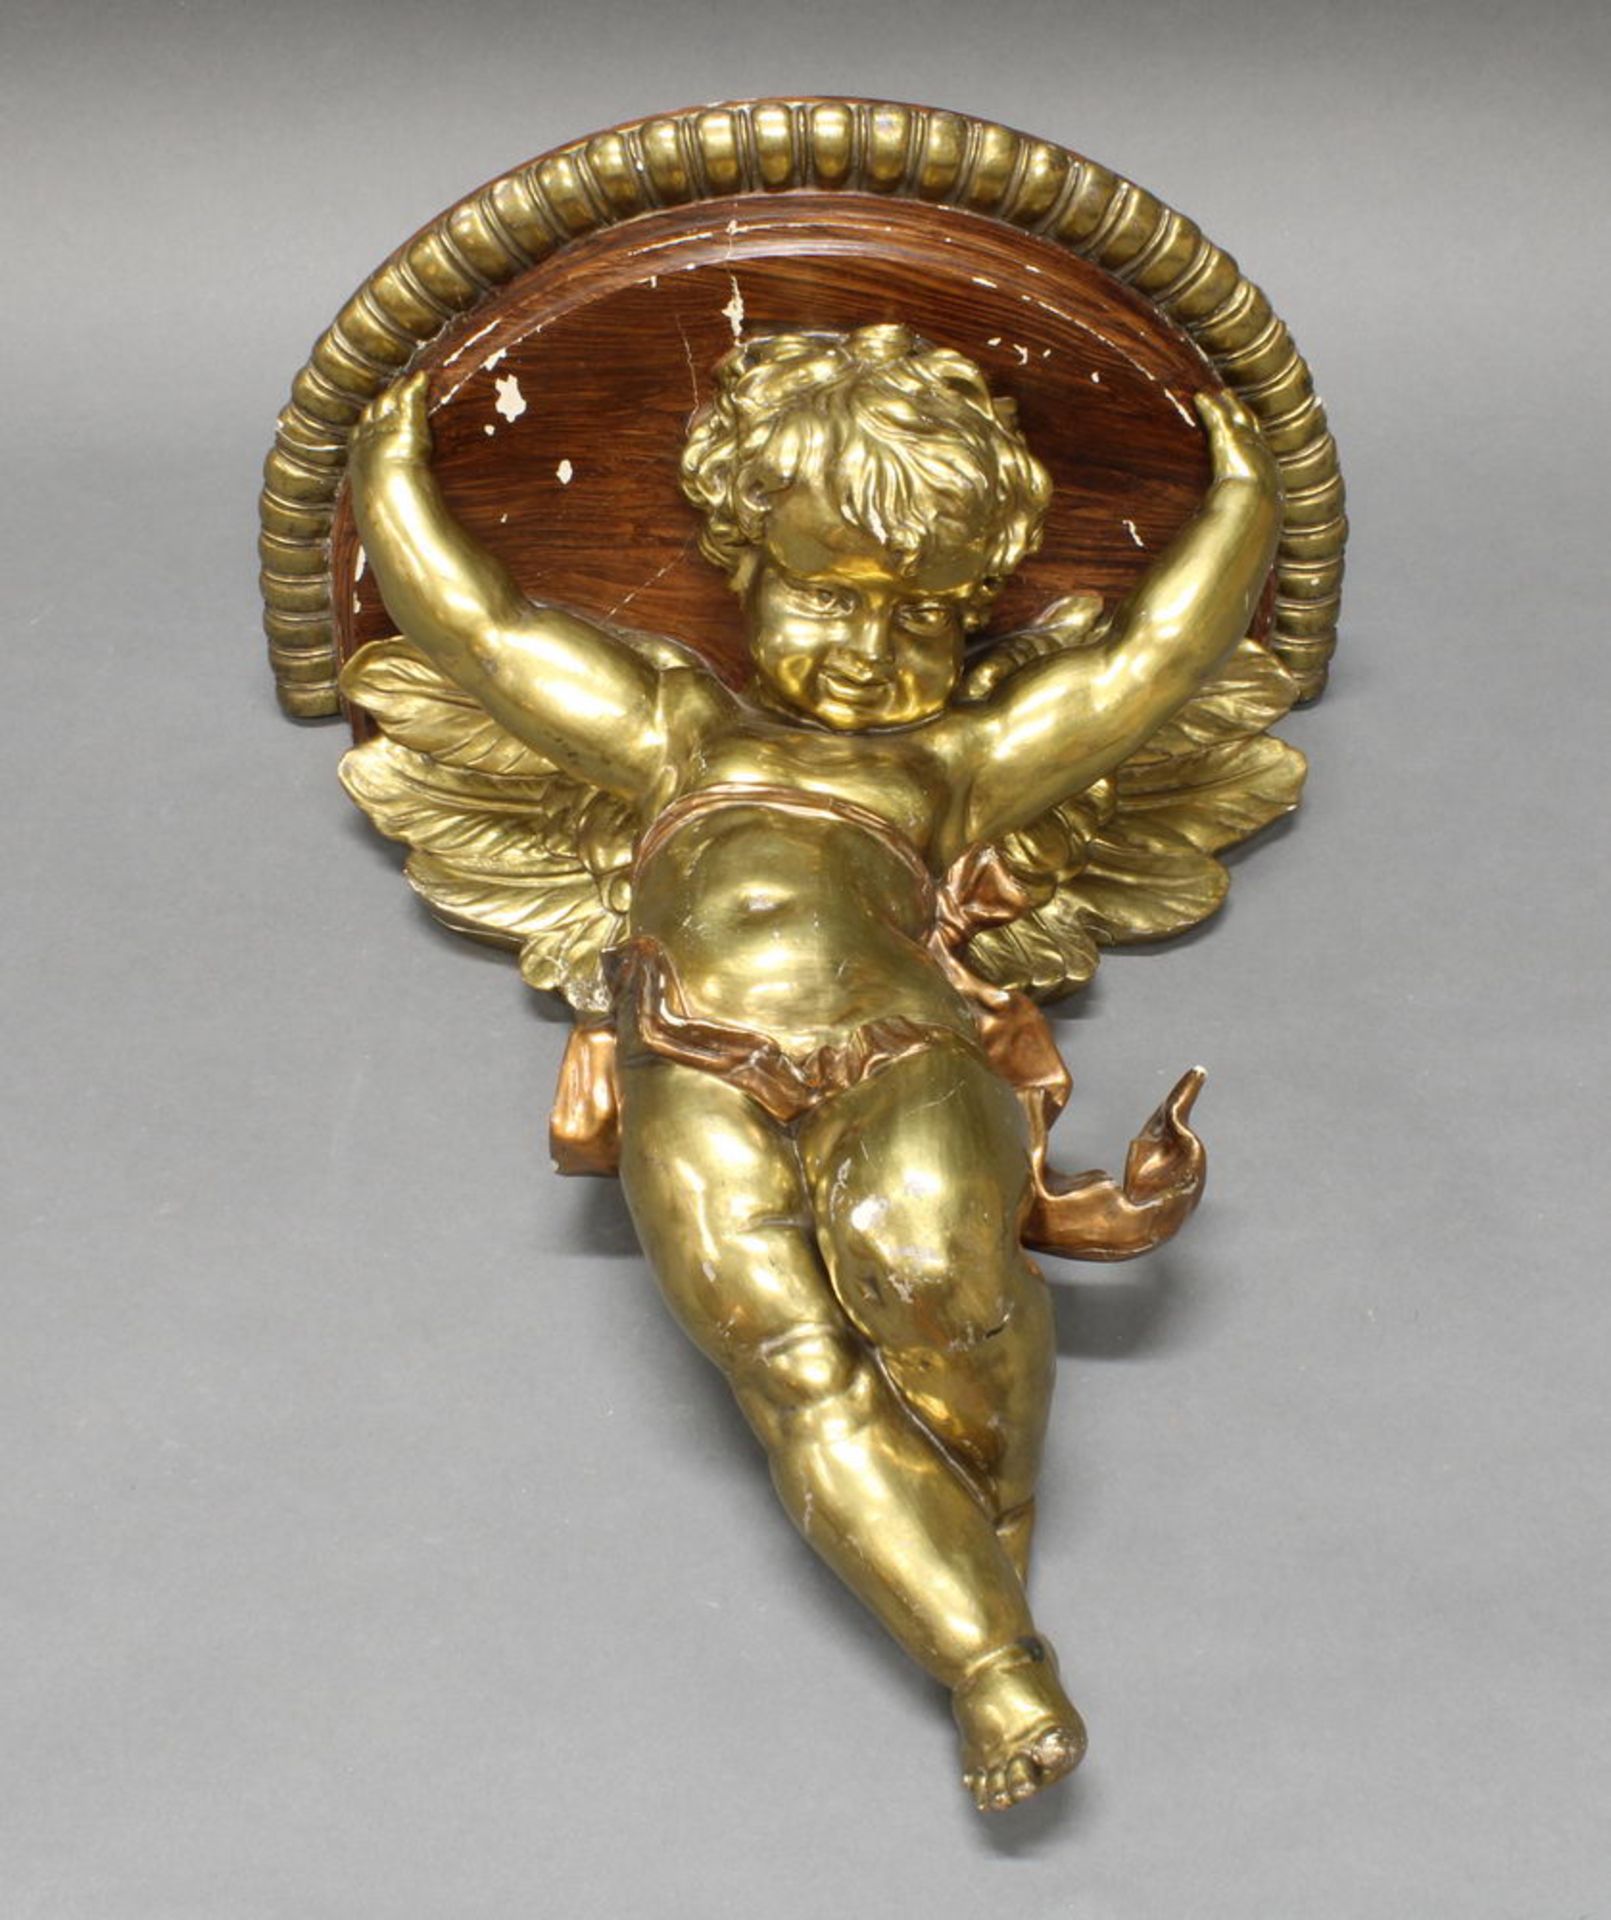 Konsole, wohl 19. Jh., Holz/Stuck goldfarbig, Putto, die Konsolplatte tragend, ca. 45 cm hoch, dive